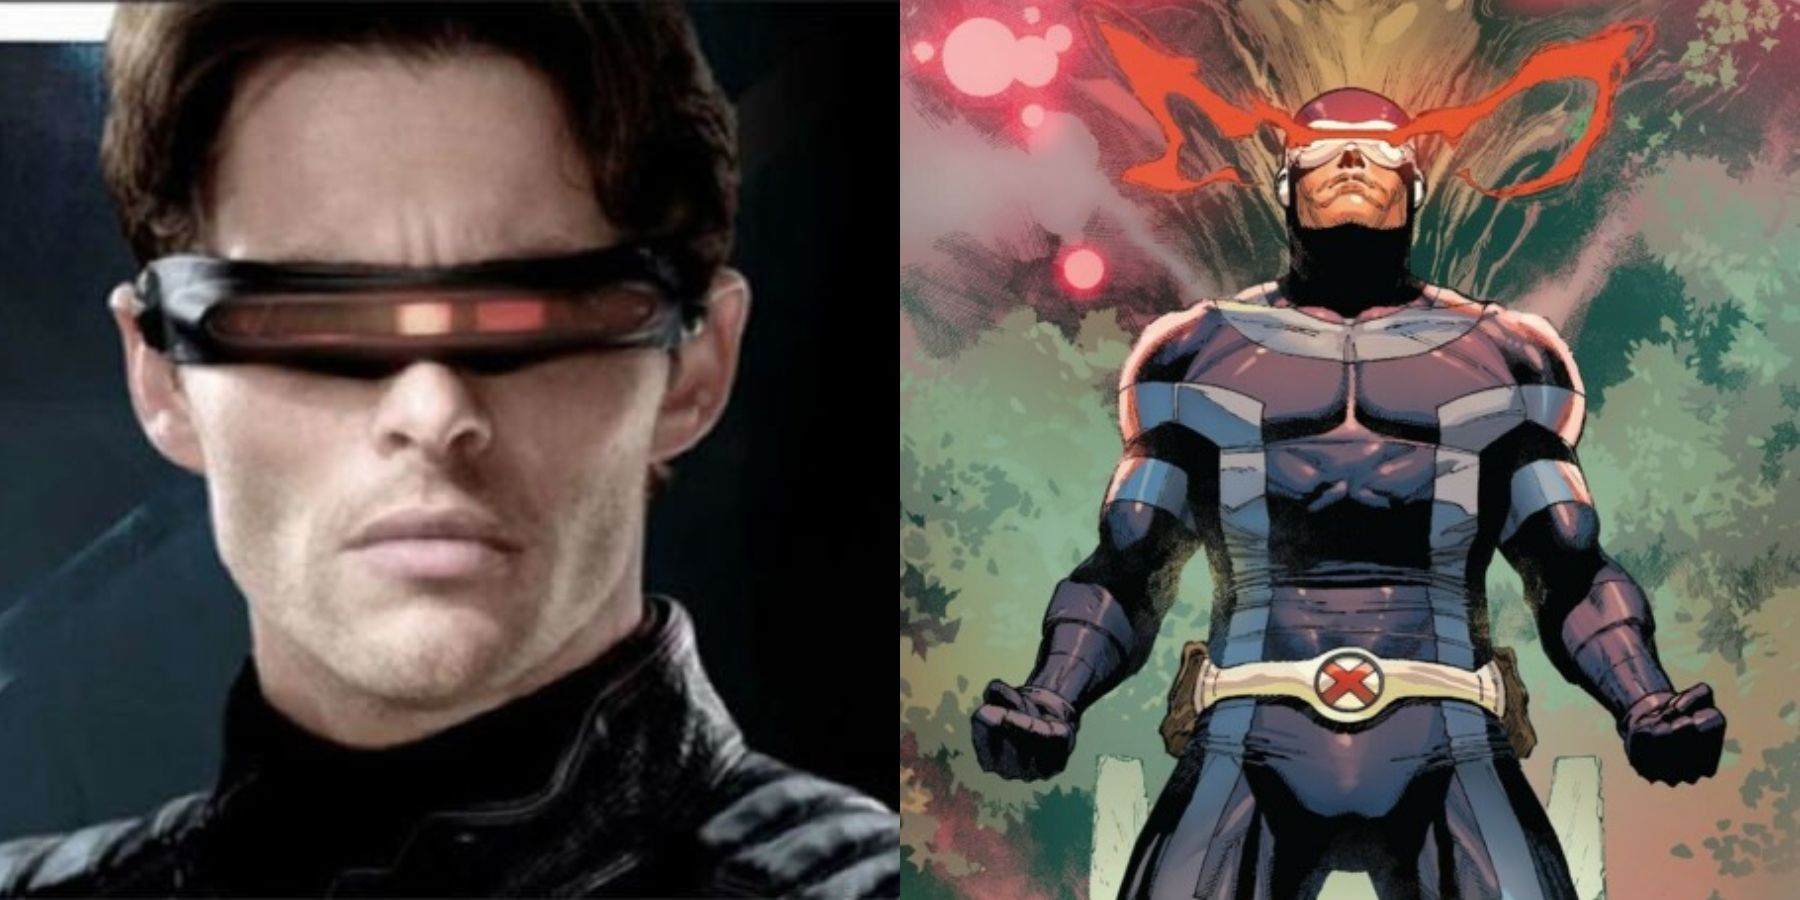 X-Men-Cyclops-Movie-vs-Comics